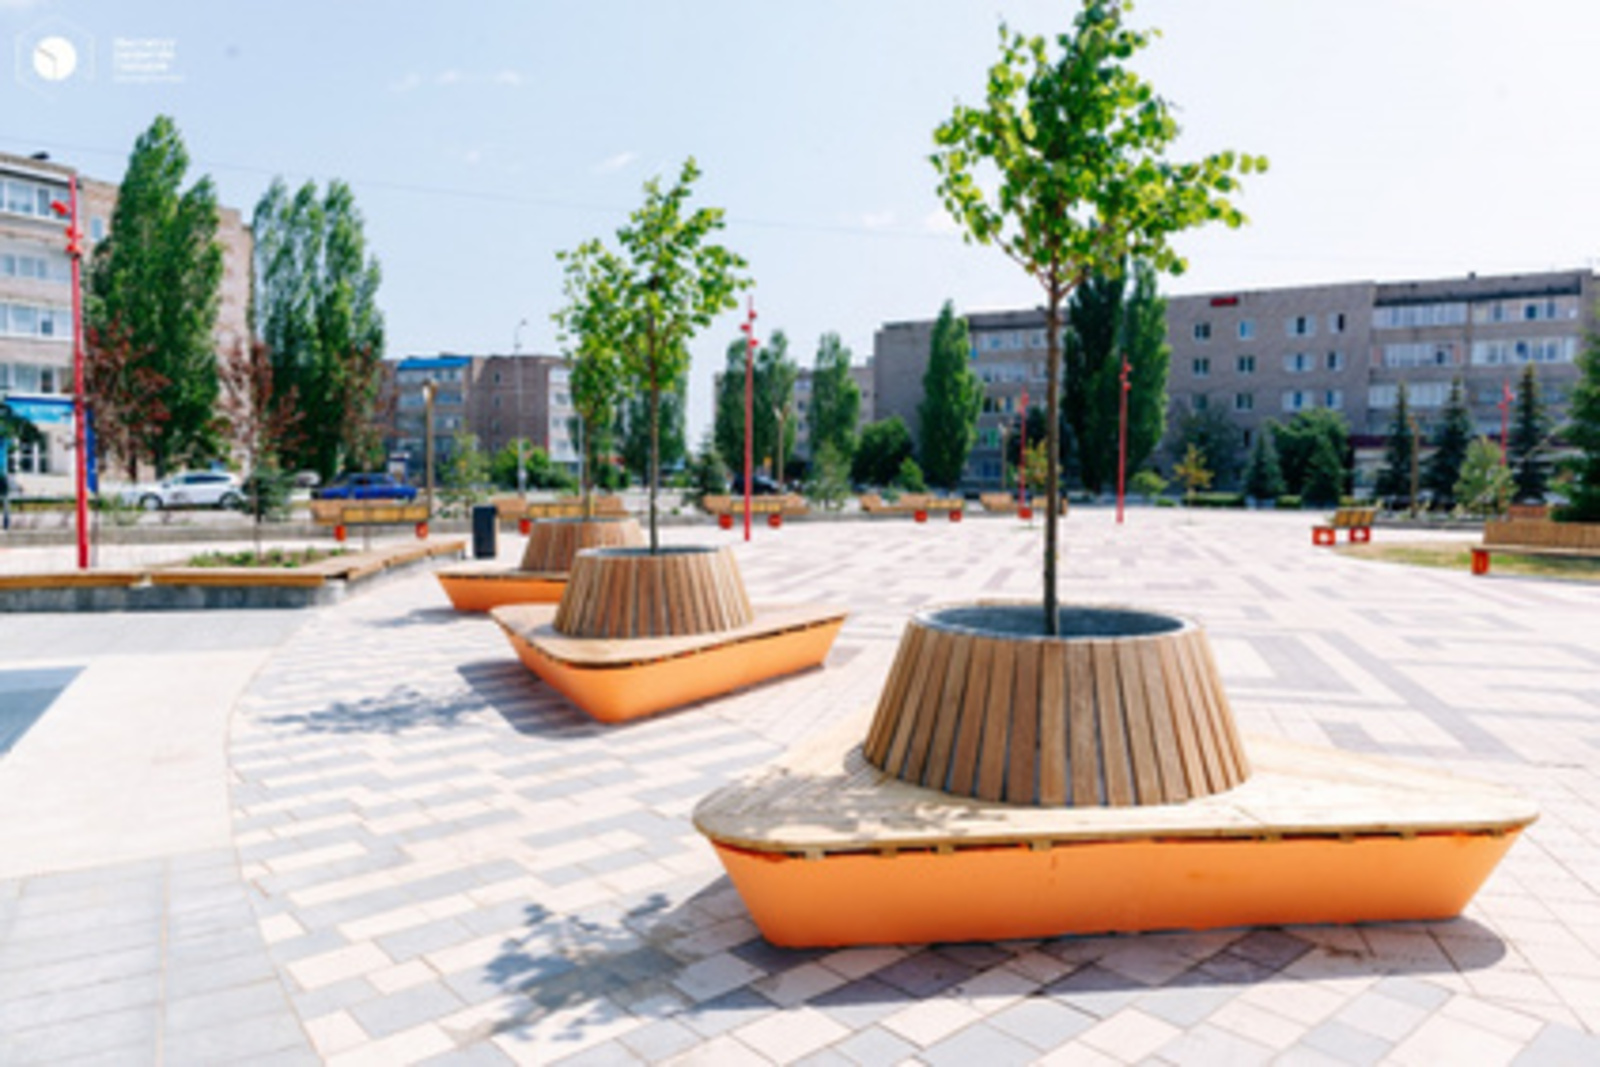 Башкортостан в тройке лидеров по реализации федерального проекта «Формирование комфортной городской среды» в 2020 году